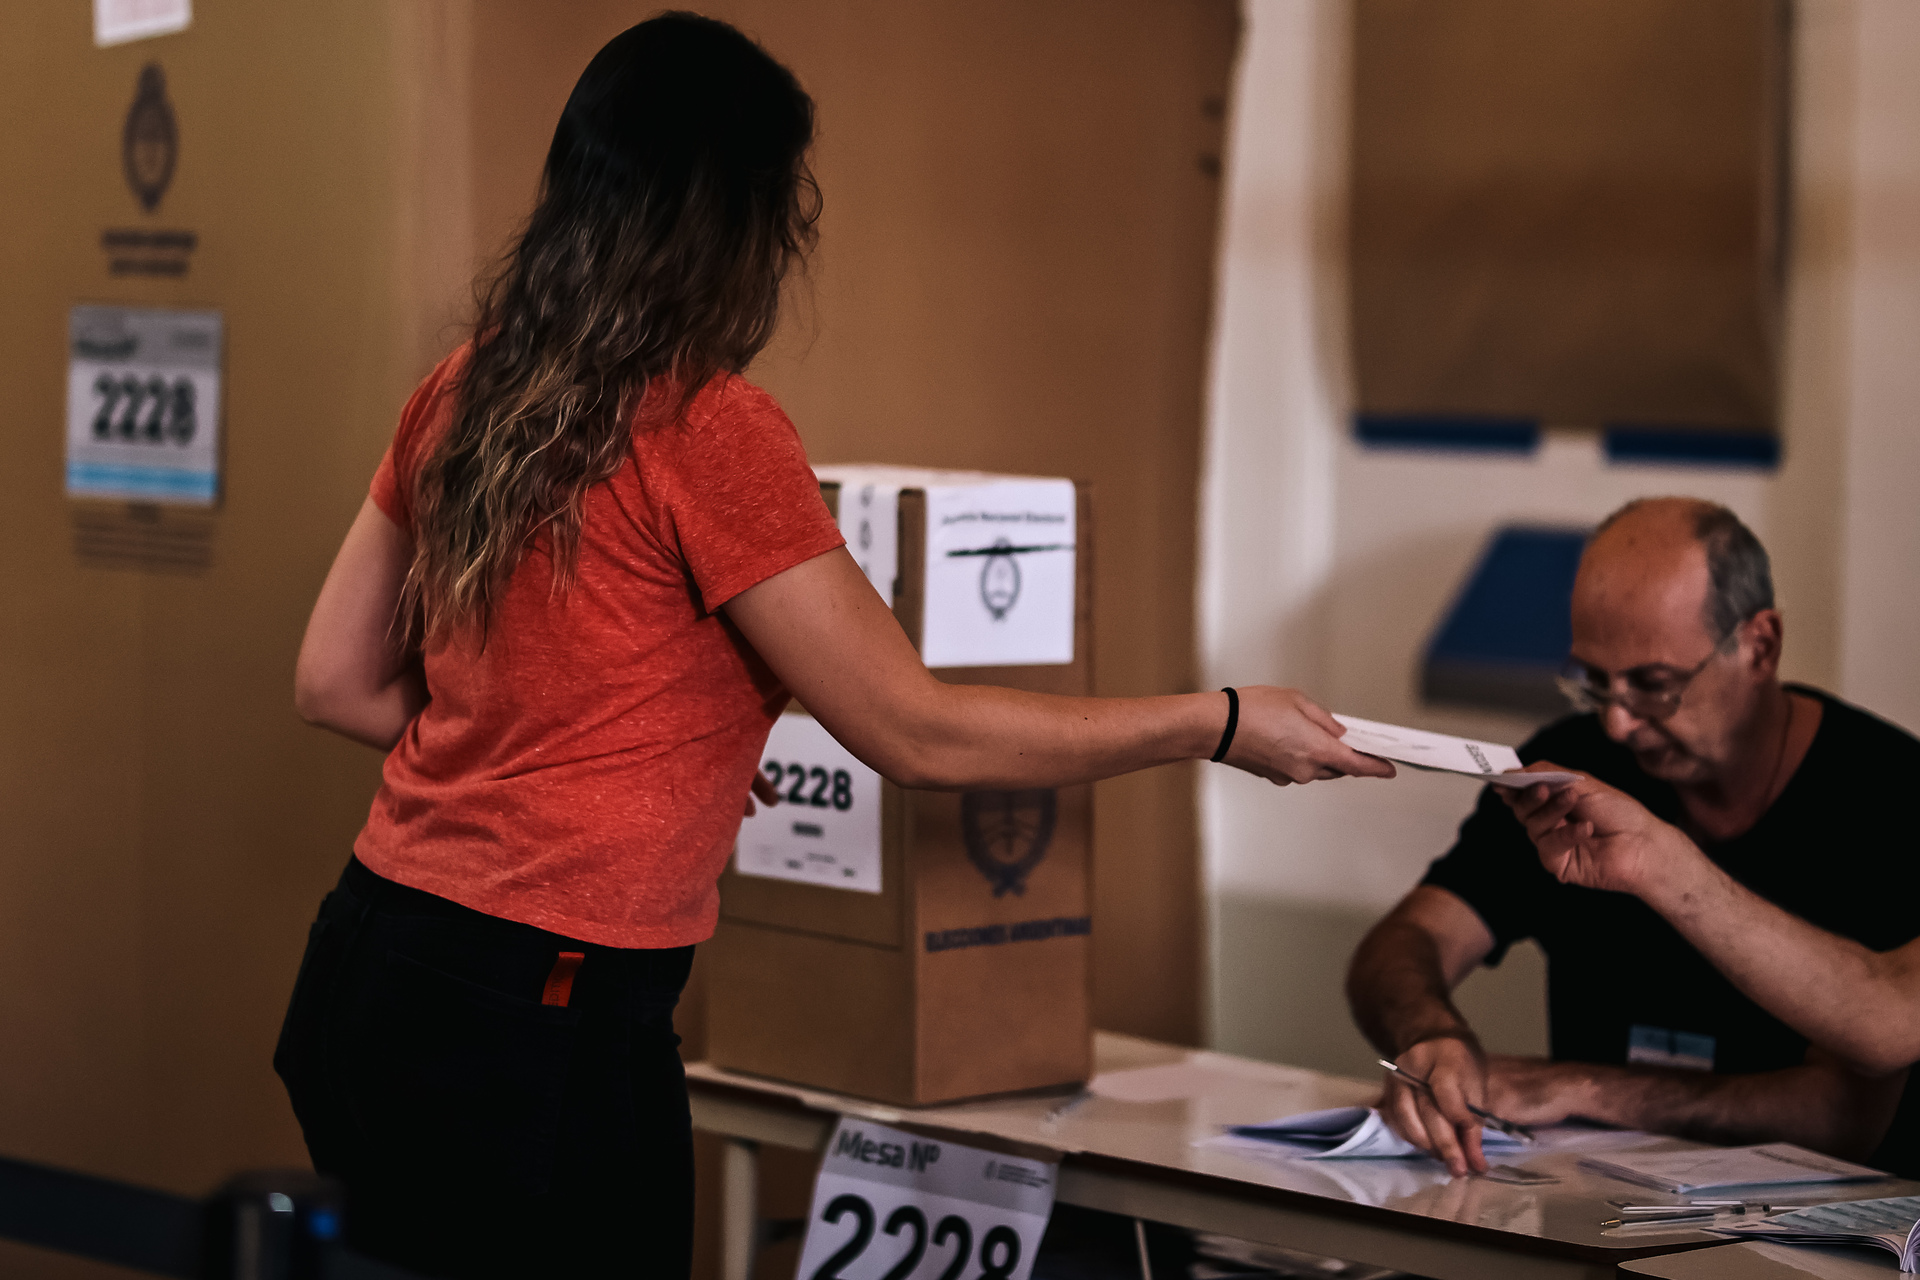 Unos 35.8 millones de argentinos están convocados a votar con sufragio obligatorio para ciudadanos entre 18 y 70 años y optativo para quienes superen esa edad y para los adolescentes de 16 y 17 años, además de para residentes en el exterior. (JUAN IGNACIO RONCORONI / EFE)